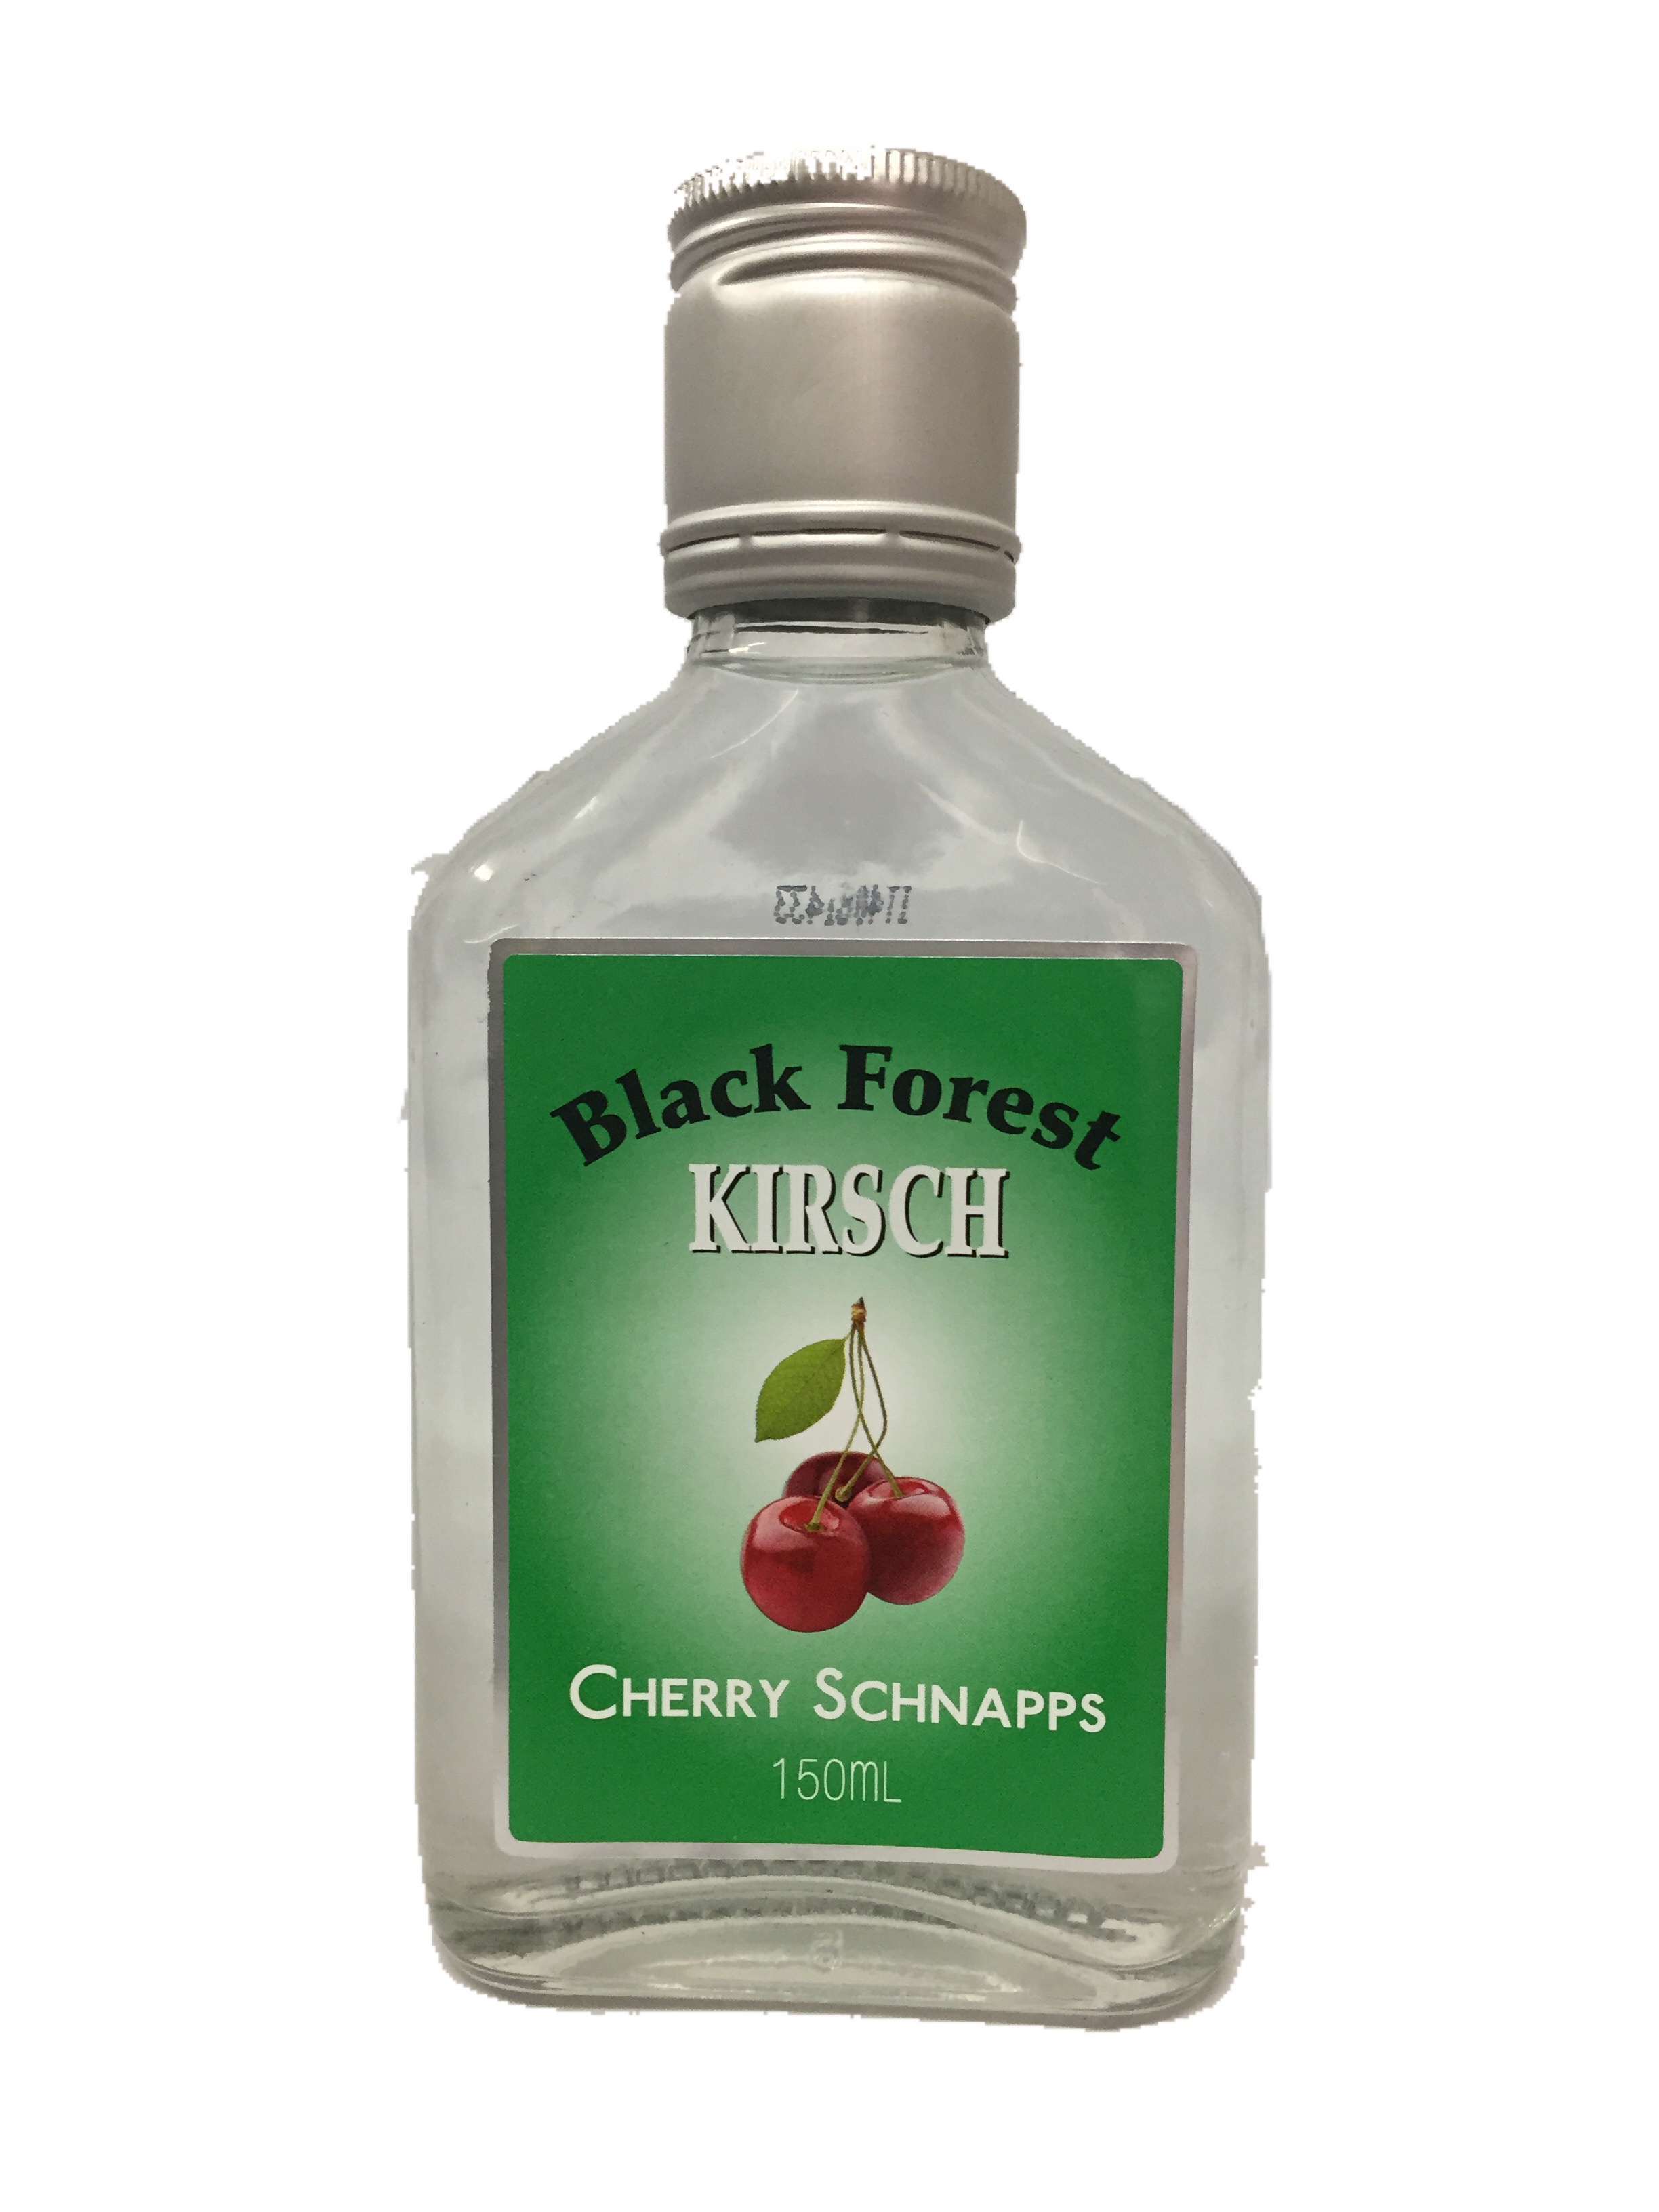 Black Forest-kirsh Cherry Schapps 150ml